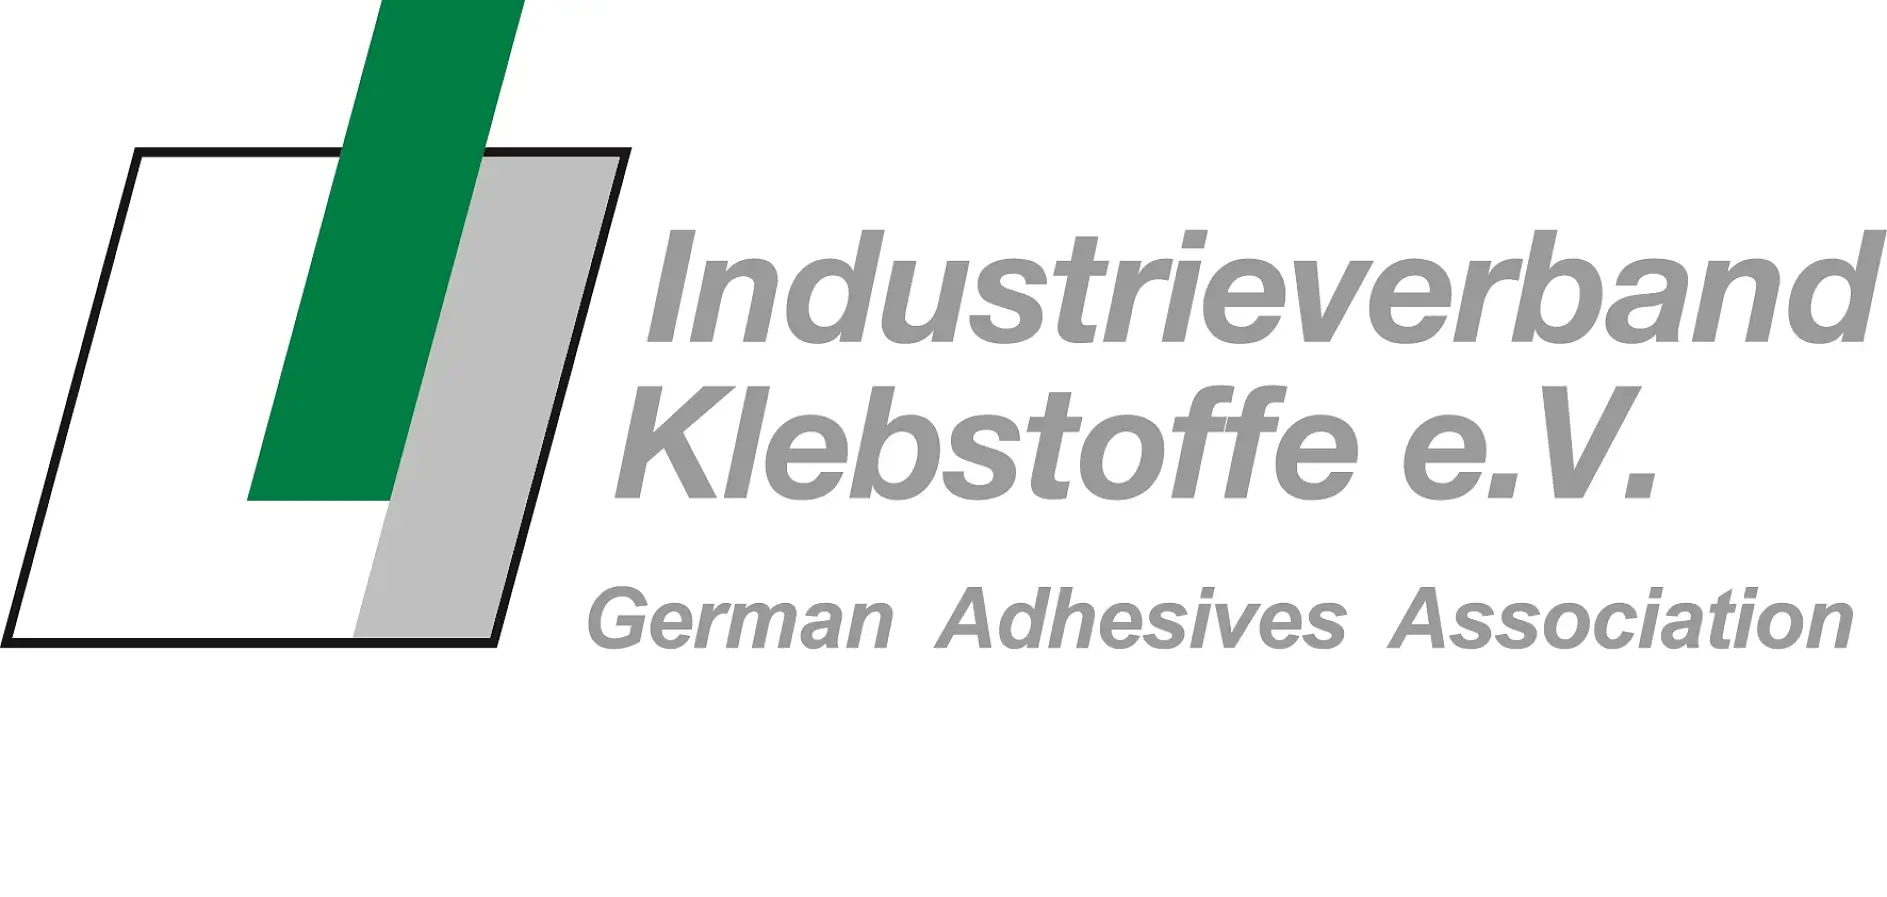 Асоціація виробників клейових виробів Німеччини є найбільшою у світі – і, по відношенню до свого широкого портфоліо послуг, одночасно і світовим лідером – національною організацією в галузі технології склеювання за допомогою адгезивів.